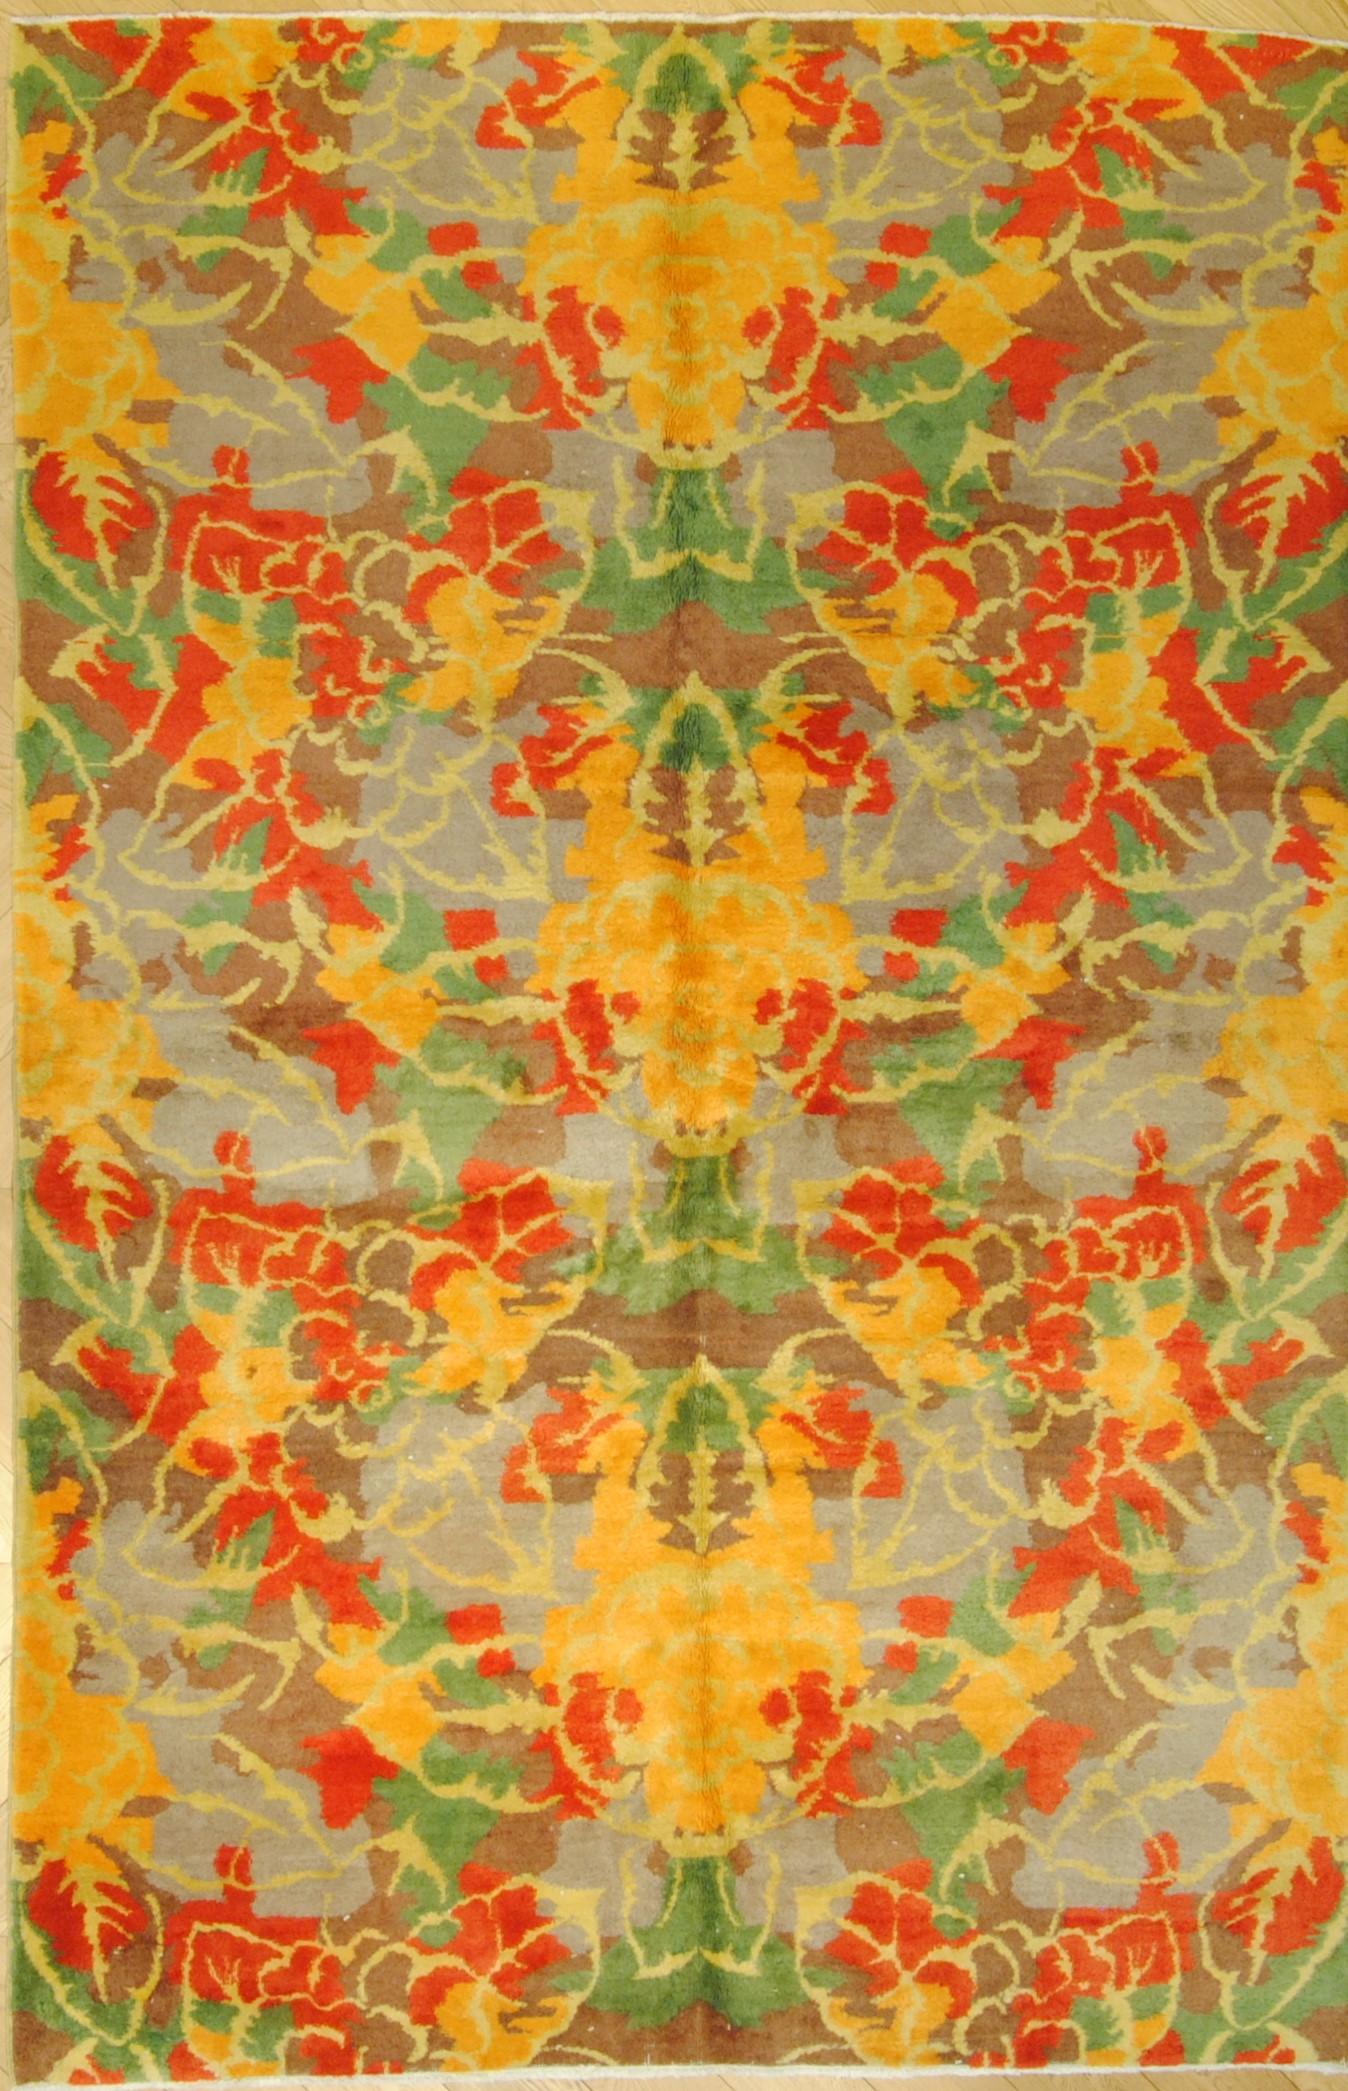 Arizona Sunset est le nom de ce tapis inhabituel décoré de motifs polychromes, fruit de la fantaisie artistique du légendaire artiste turc Zeki Müren (Bursa 1931 -Smyrne 1996). Actif dans des domaines allant de la musique classique et contemporaine